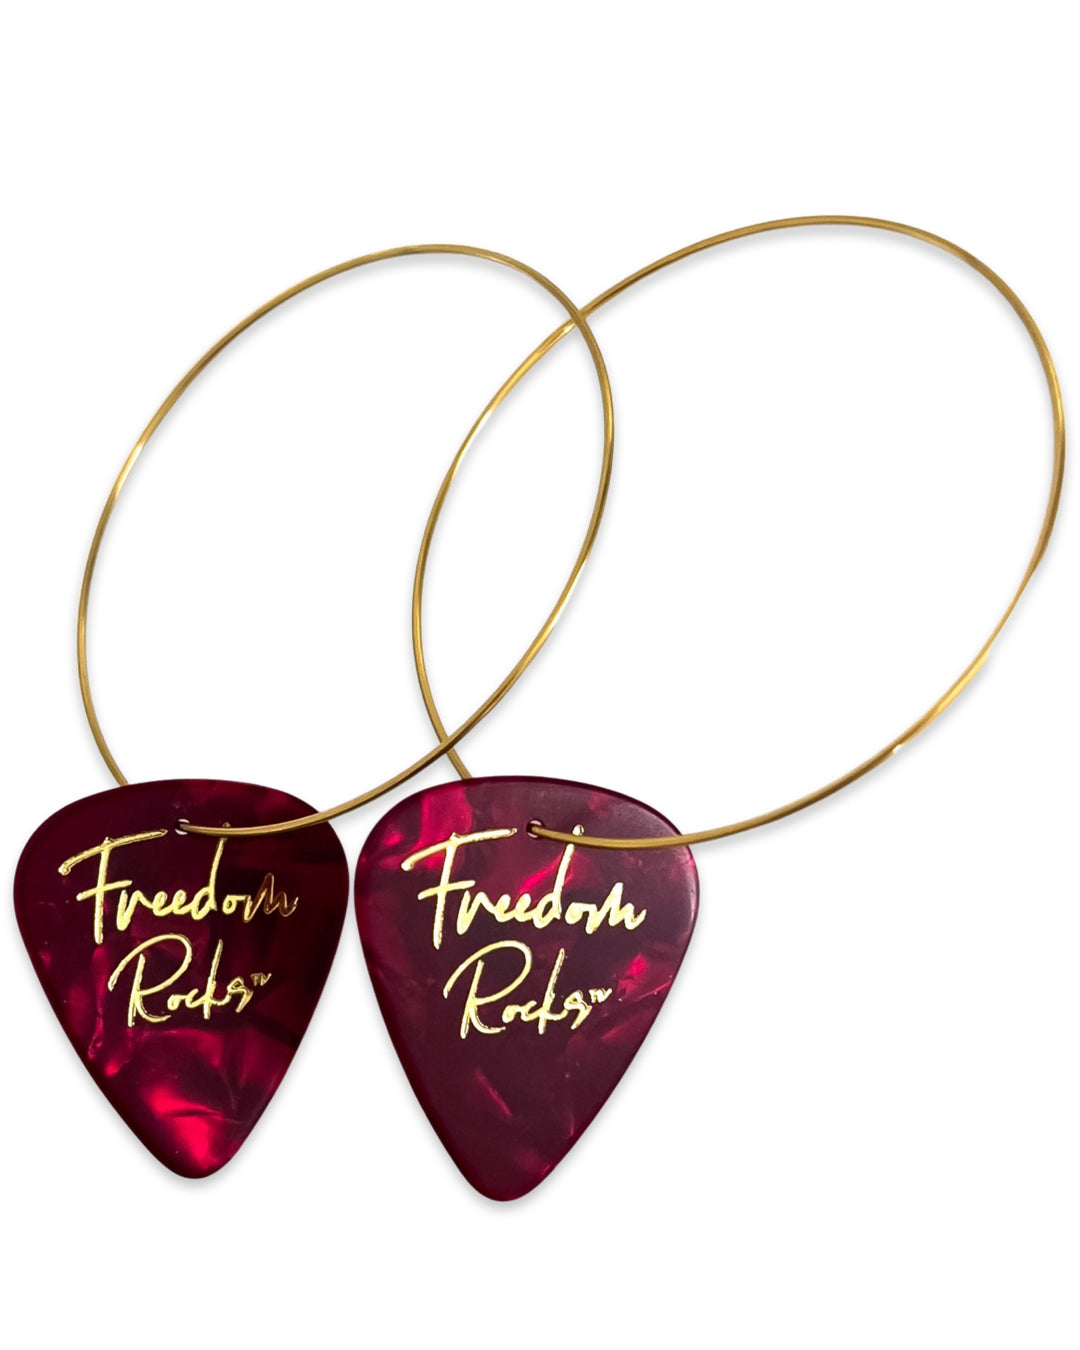 Freedom Rocks Red Single Guitar Pick Earrings